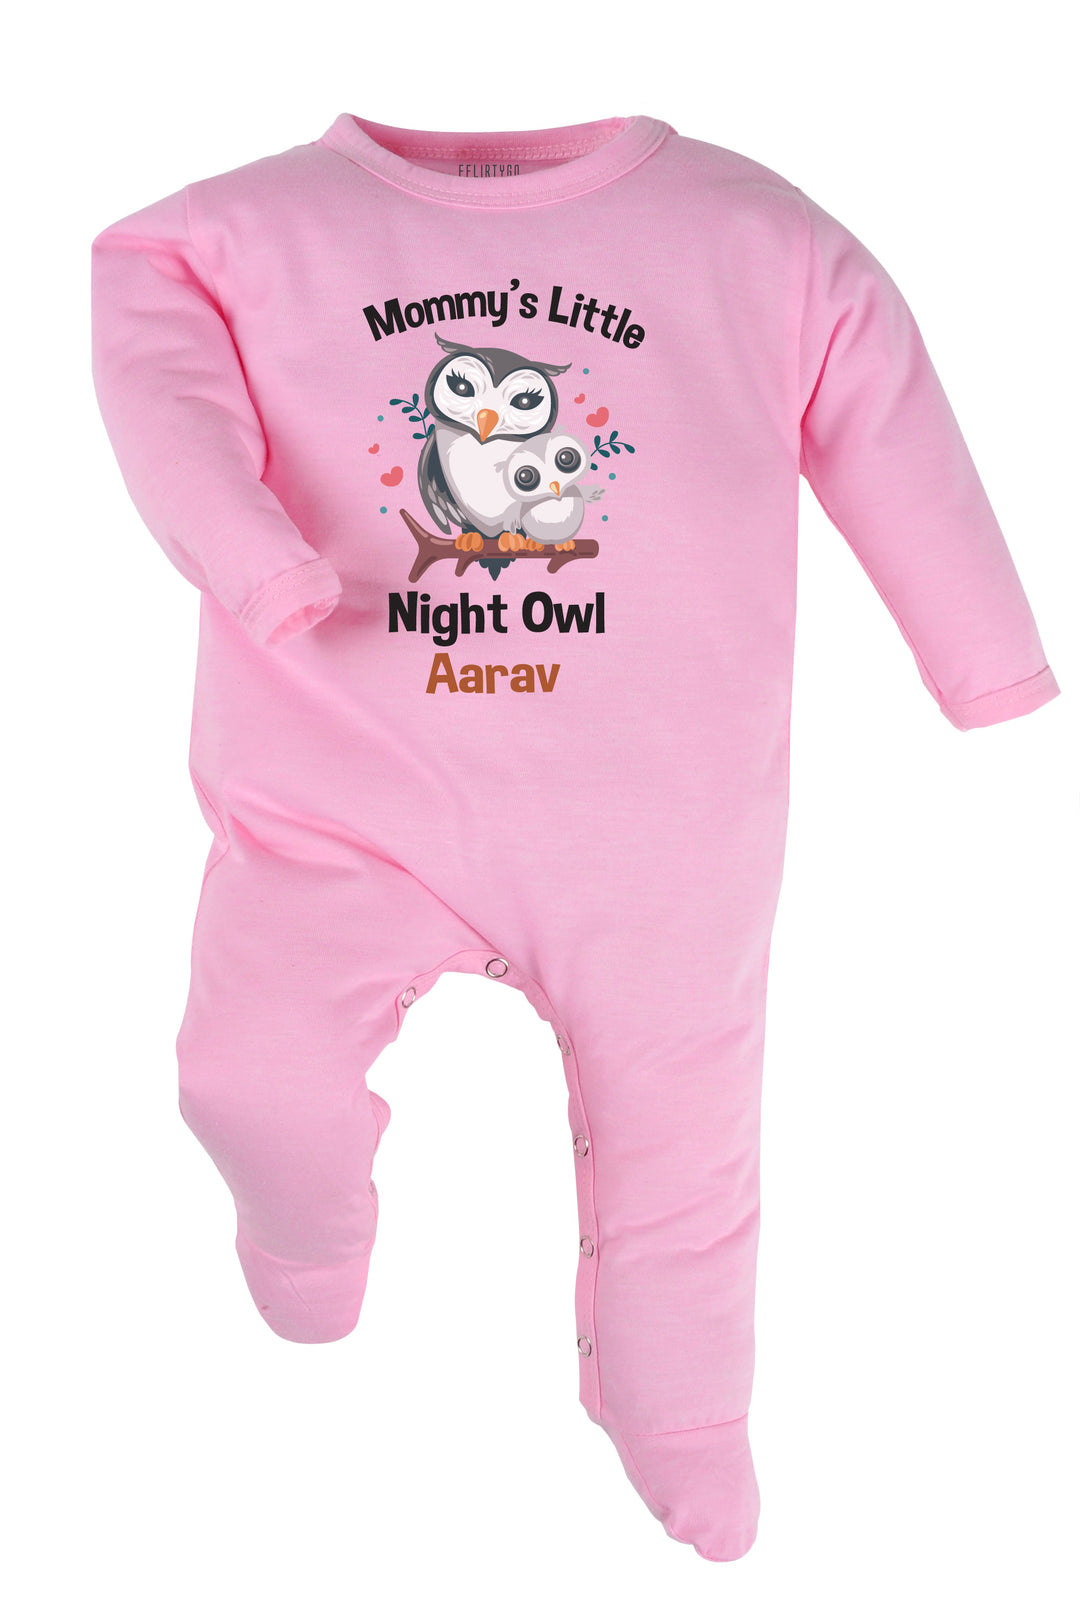 Mommy's Little Night Owl Baby Romper | Onesies w/ Custom Name